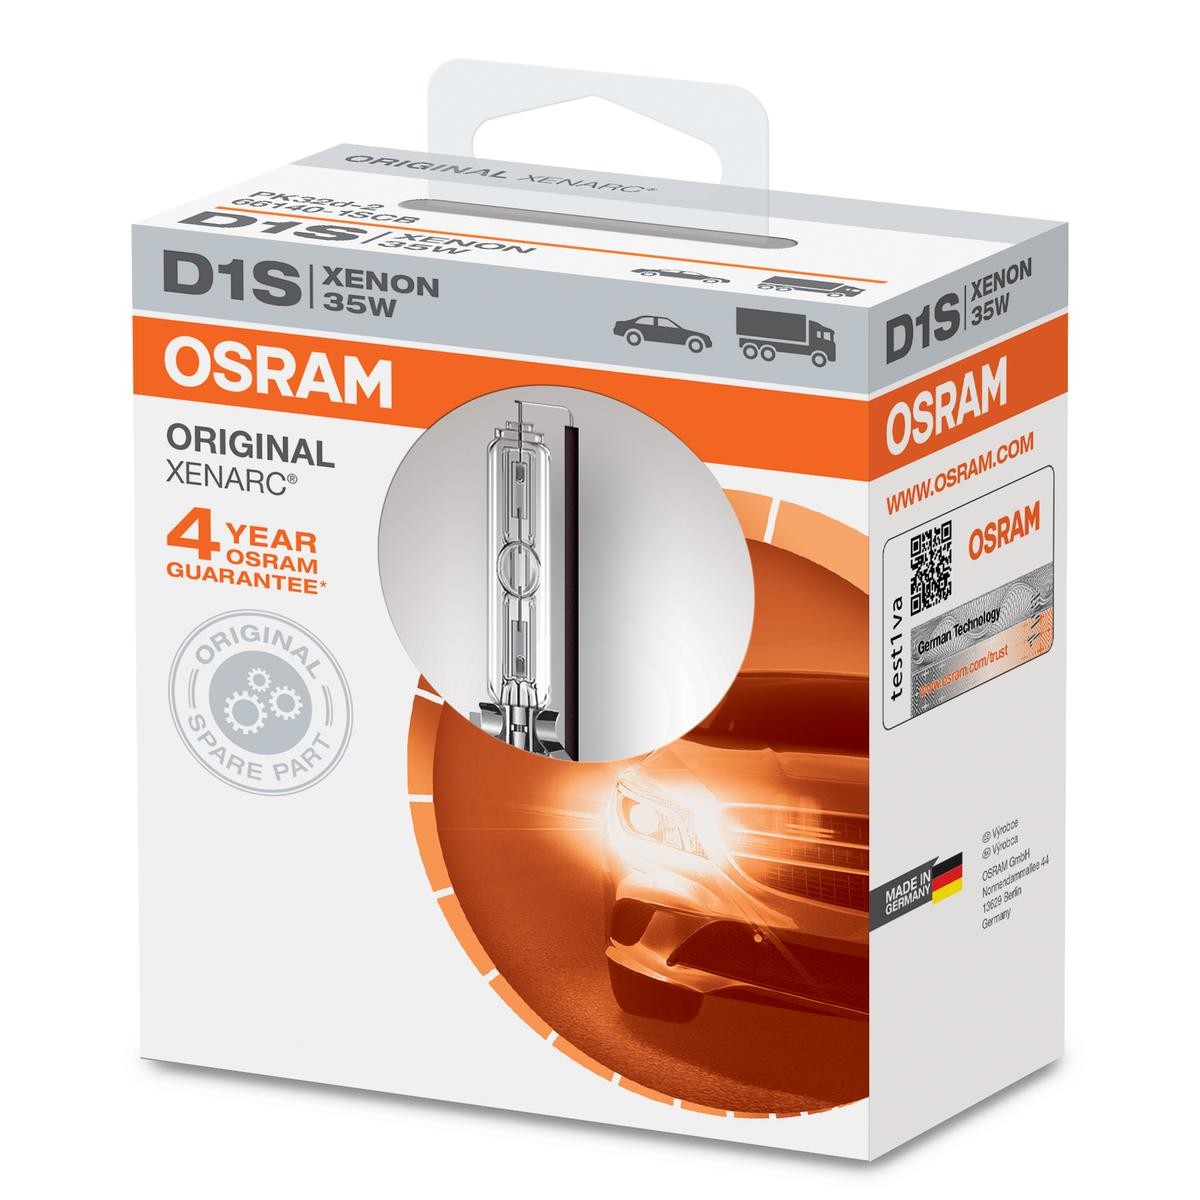 D1S OSRAM XENARC ORIGINAL 66140 Lampe für Fernlicht D1S 85V 35W4300K Xenon